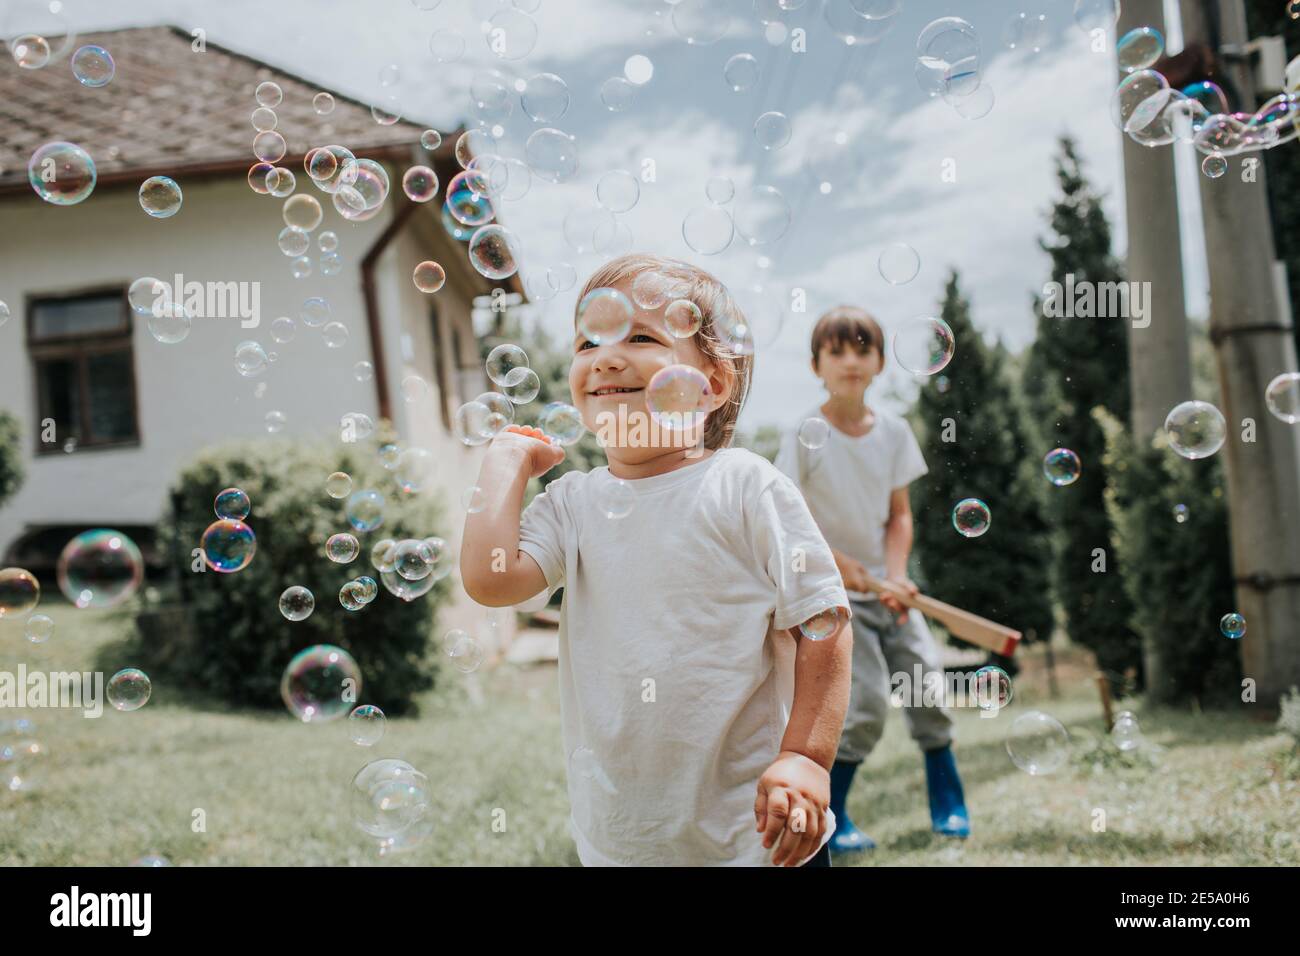 Garçon joyeux essayant de attraper des bulles de savon. Les enfants chassent les bulles de savon à l'extérieur dans un jardin par jour d'été. Banque D'Images